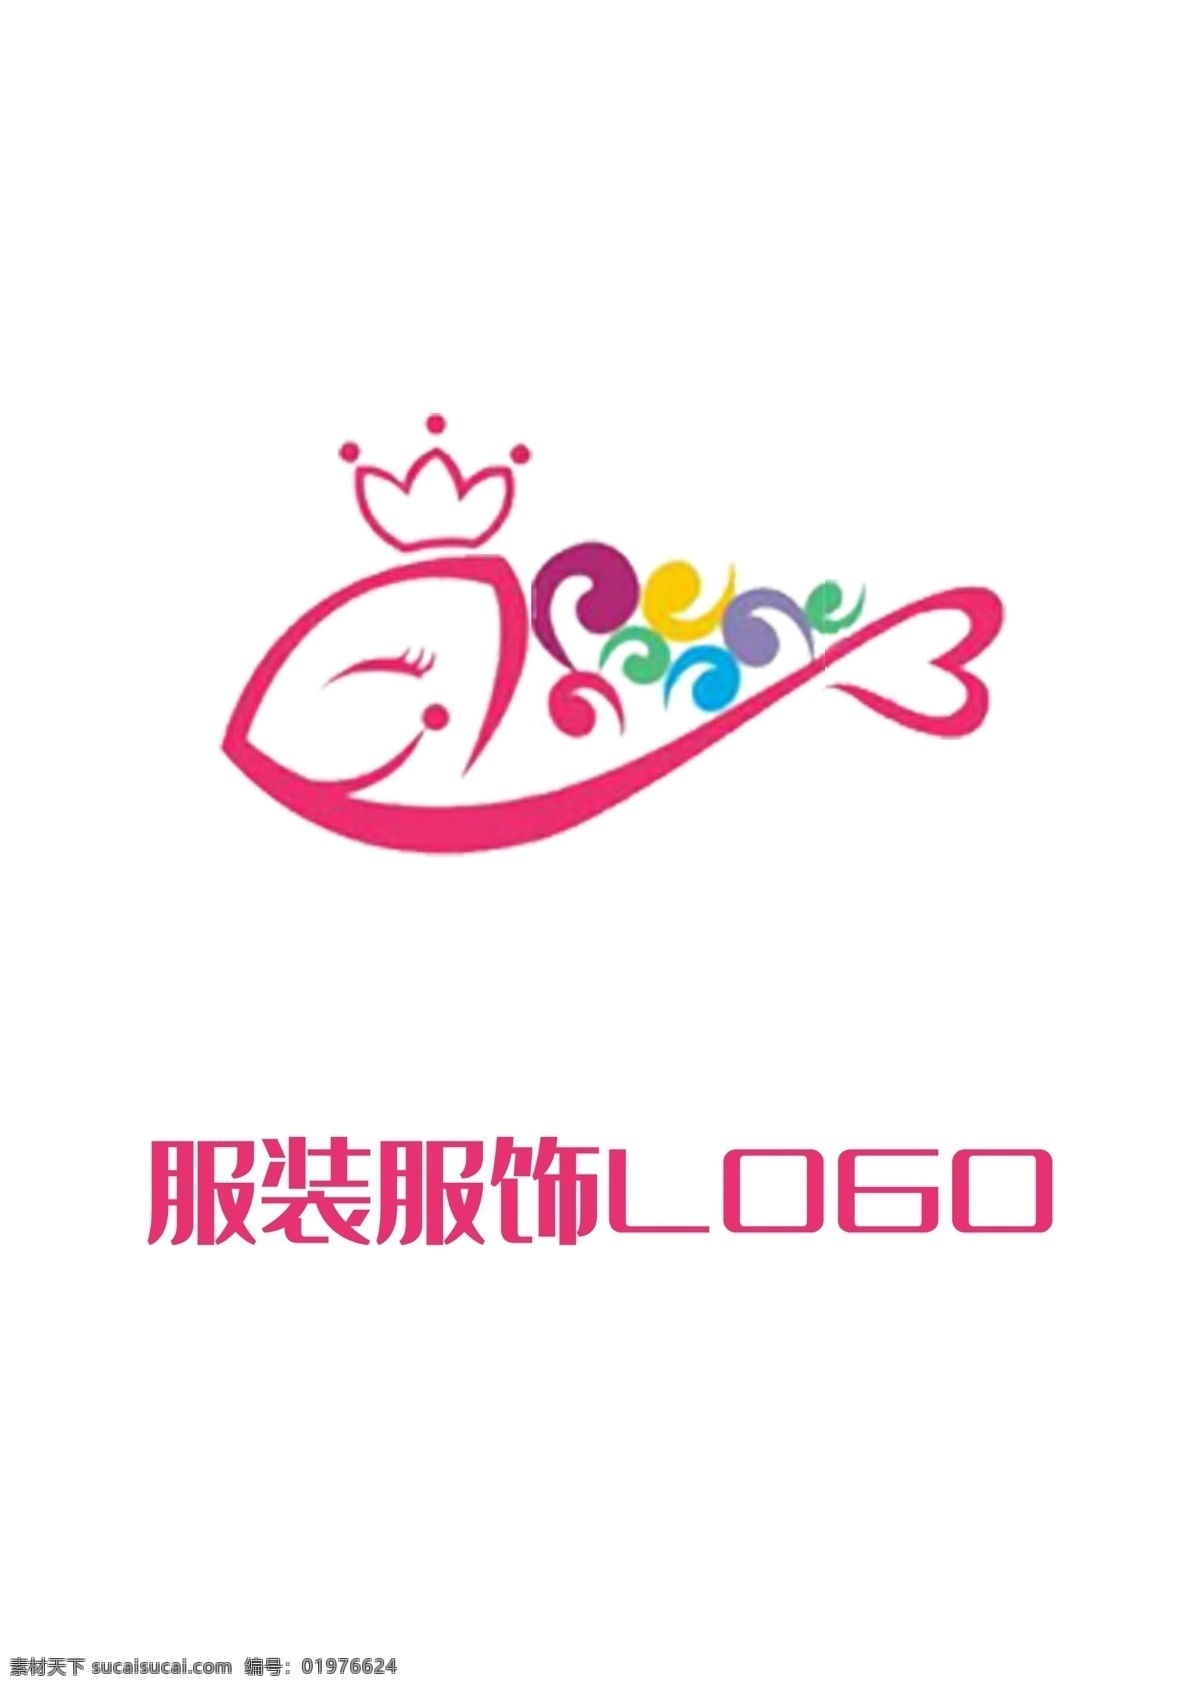 服饰 服装 logo 粉色 彩色 鱼头 形状 皇冠 童装 服饰服装